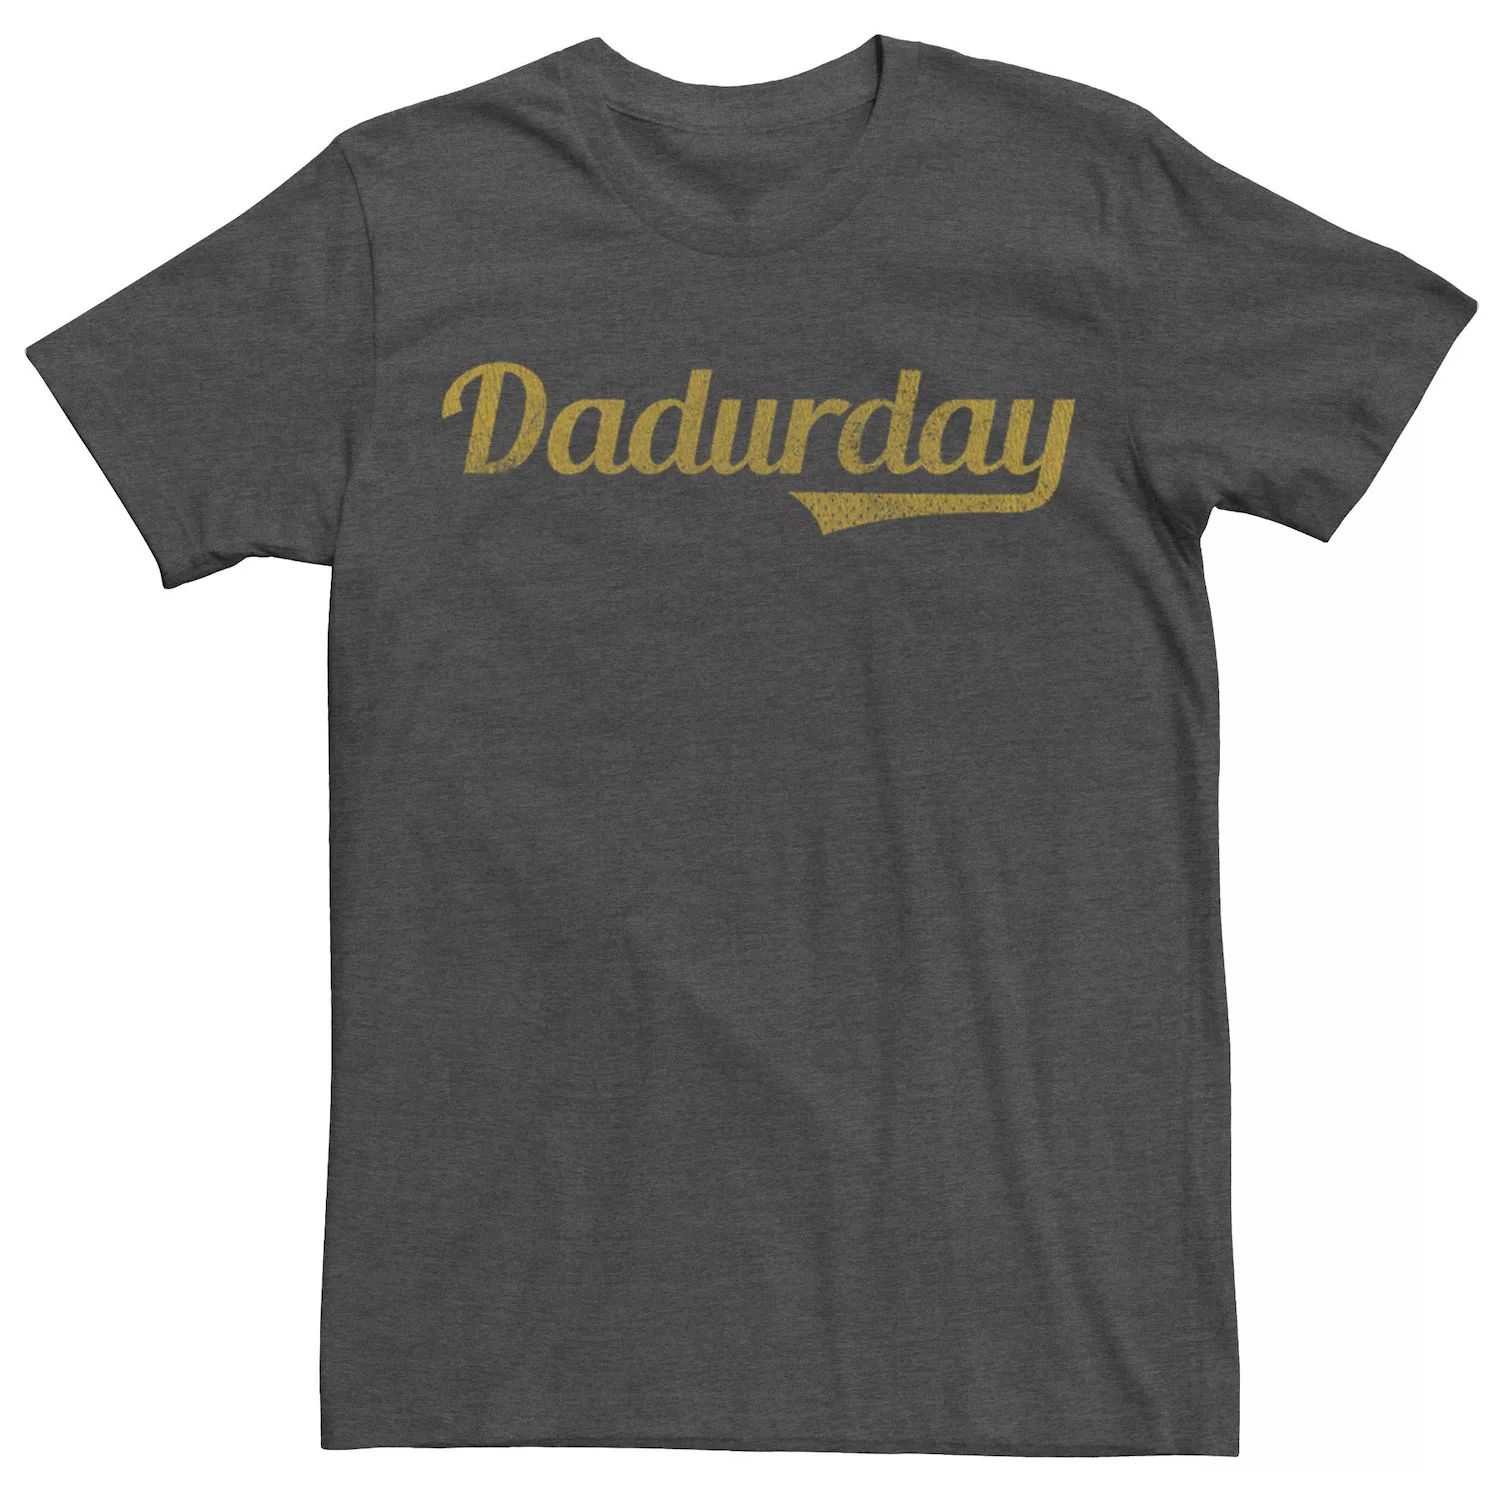 Мужская желтая футболка с надписью Dadurday Licensed Character